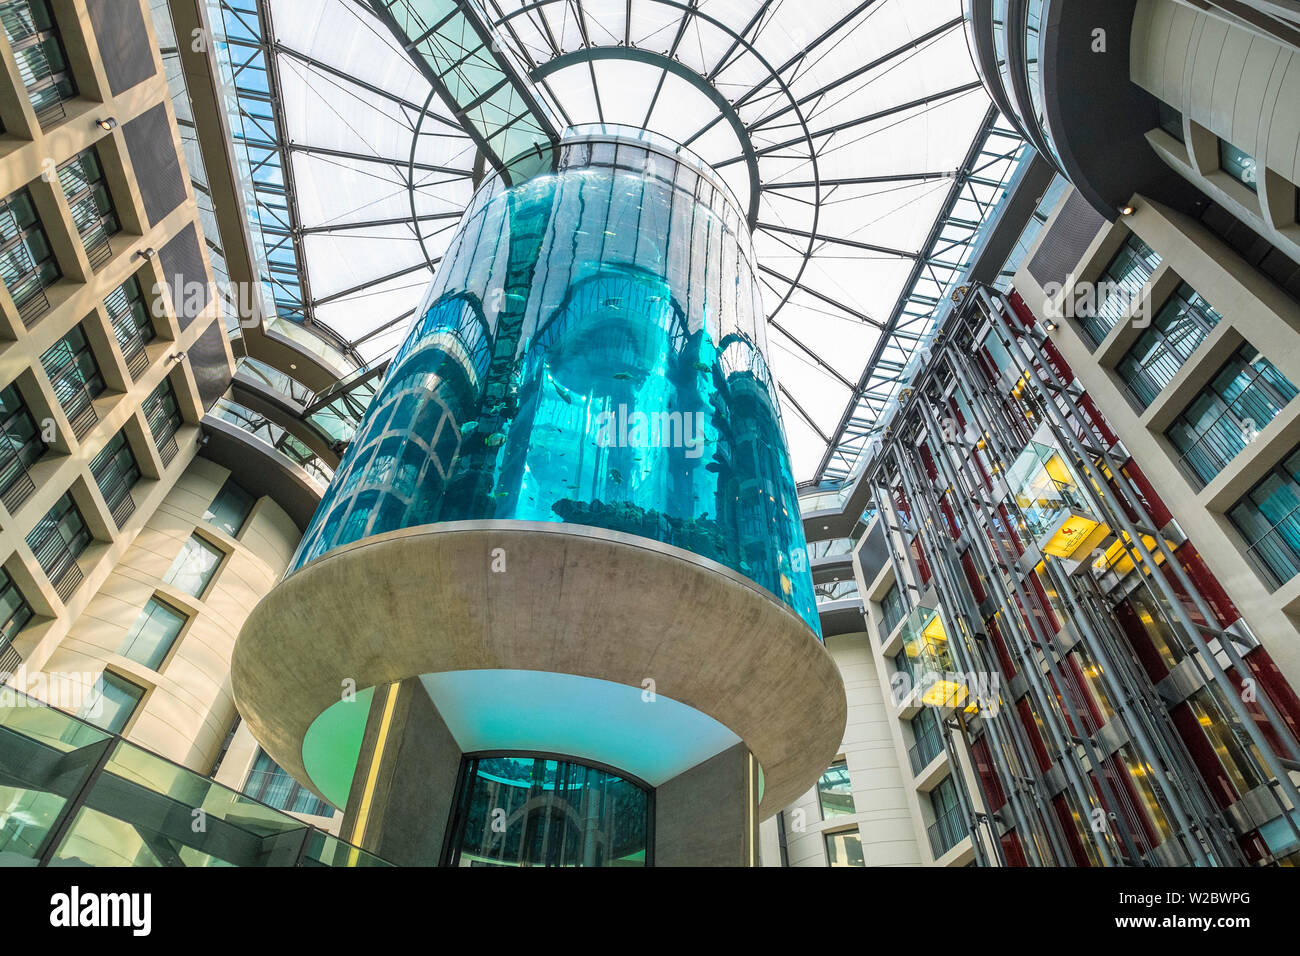 25 mètres de hauteur dans l'aquarium de l'atrium de l'hôtel Radisson Blu Hotel, Berlin, Allemagne Banque D'Images